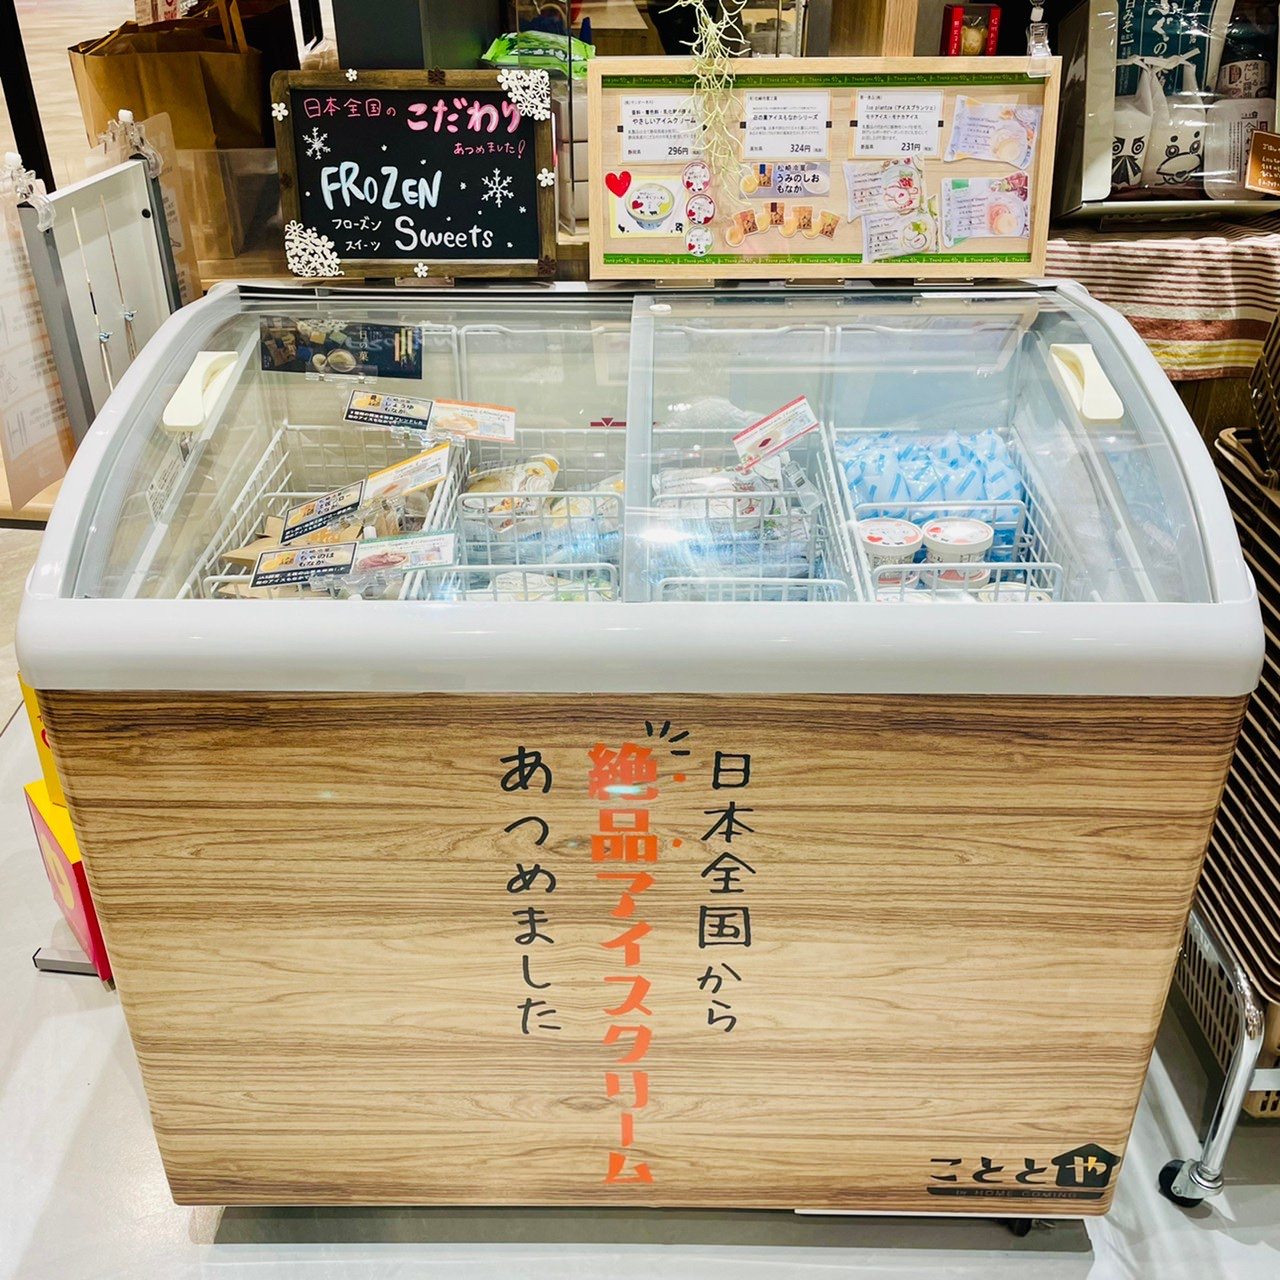 おうちでアウトドア気分を味わえる「漆黒のシェラカップ」が
Makuakeにて販売開始2週間で650万円を突破！